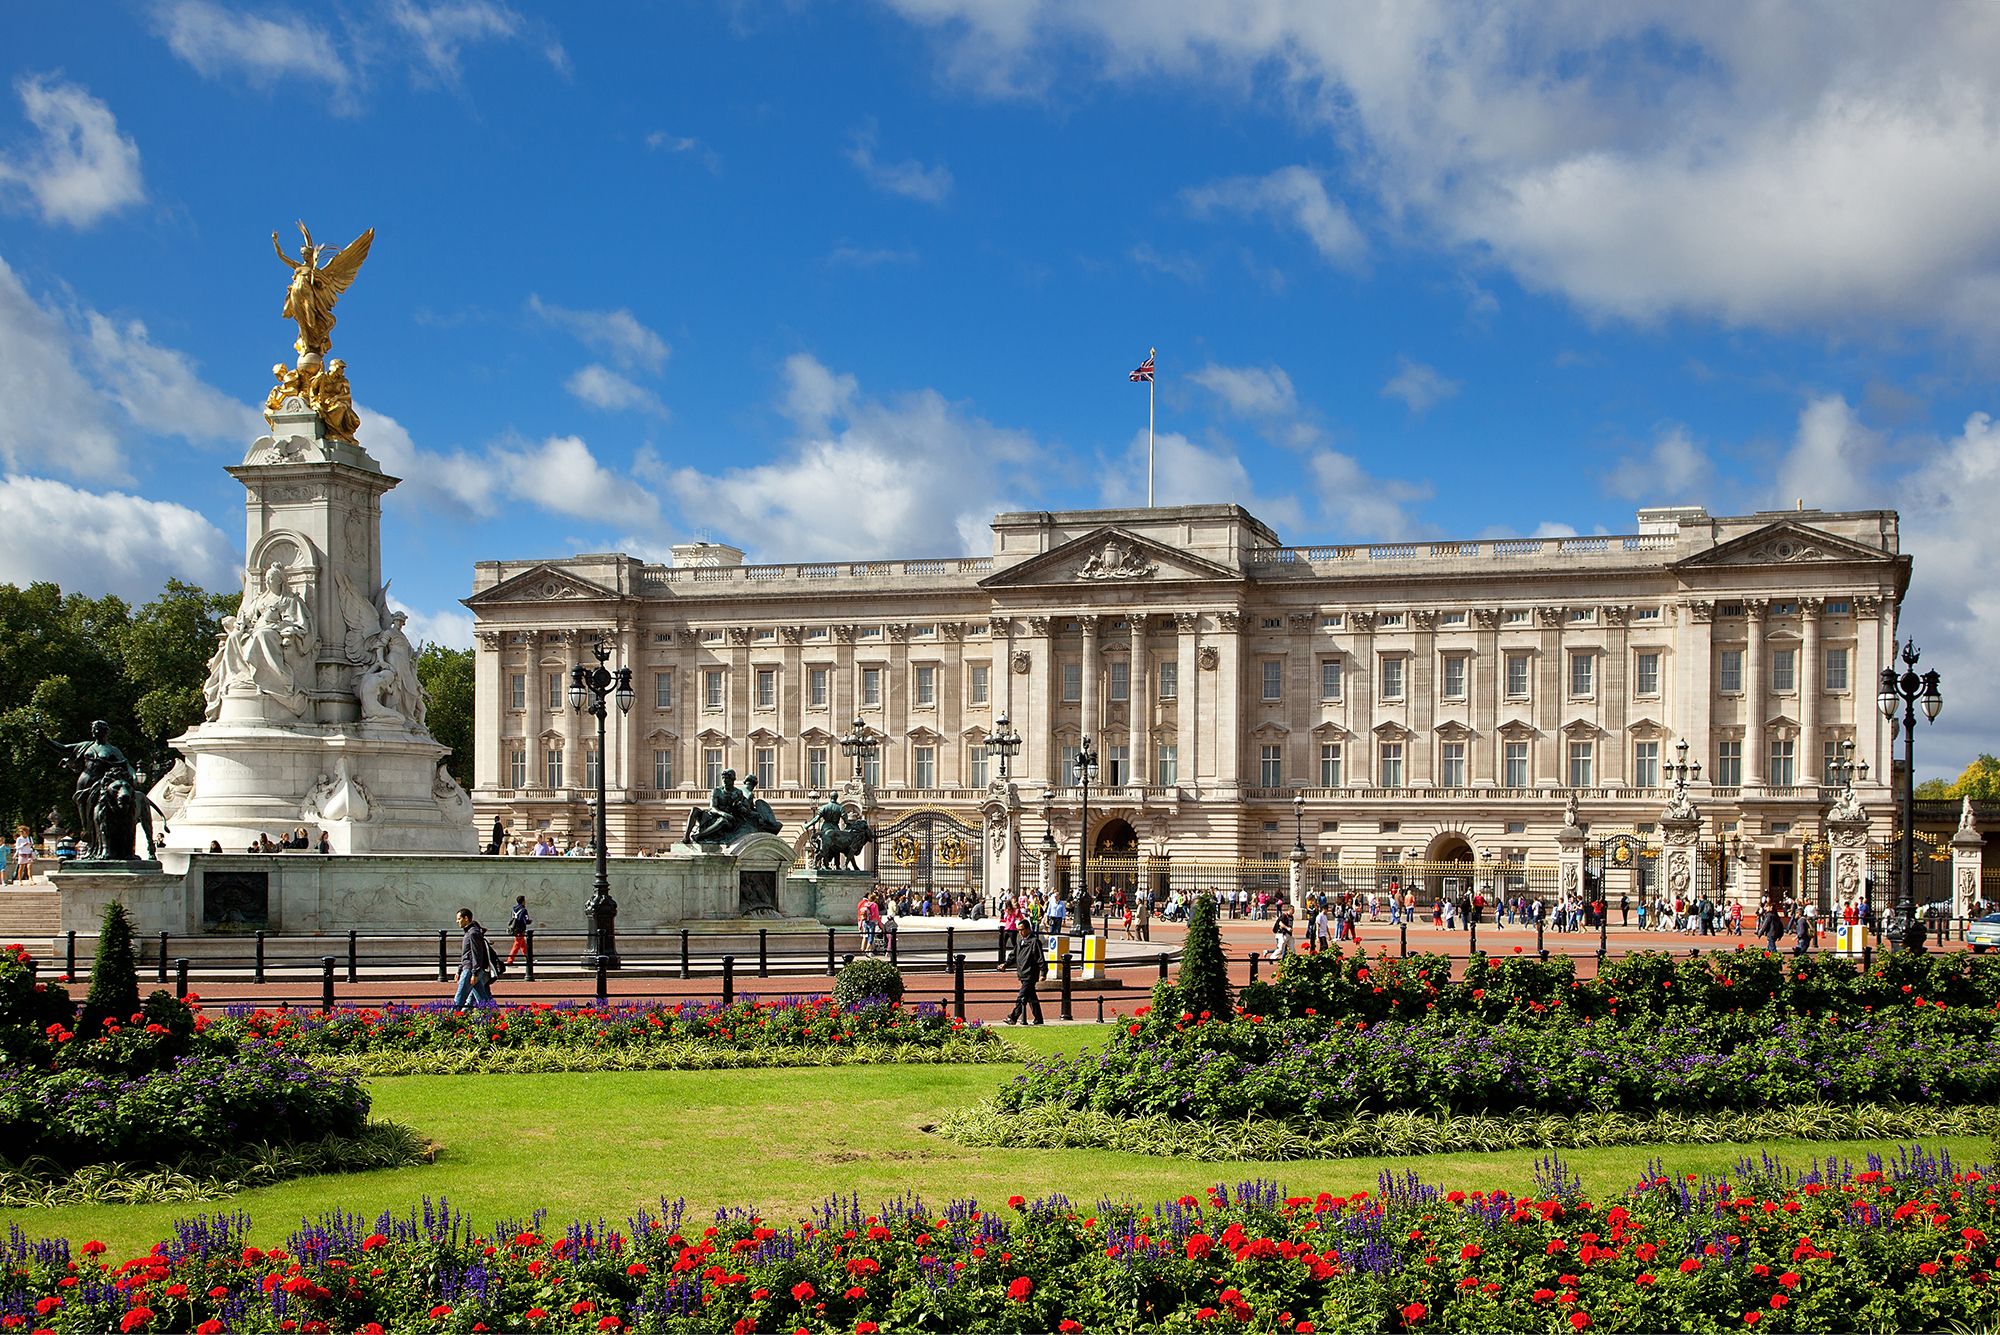 Buckingham palace images